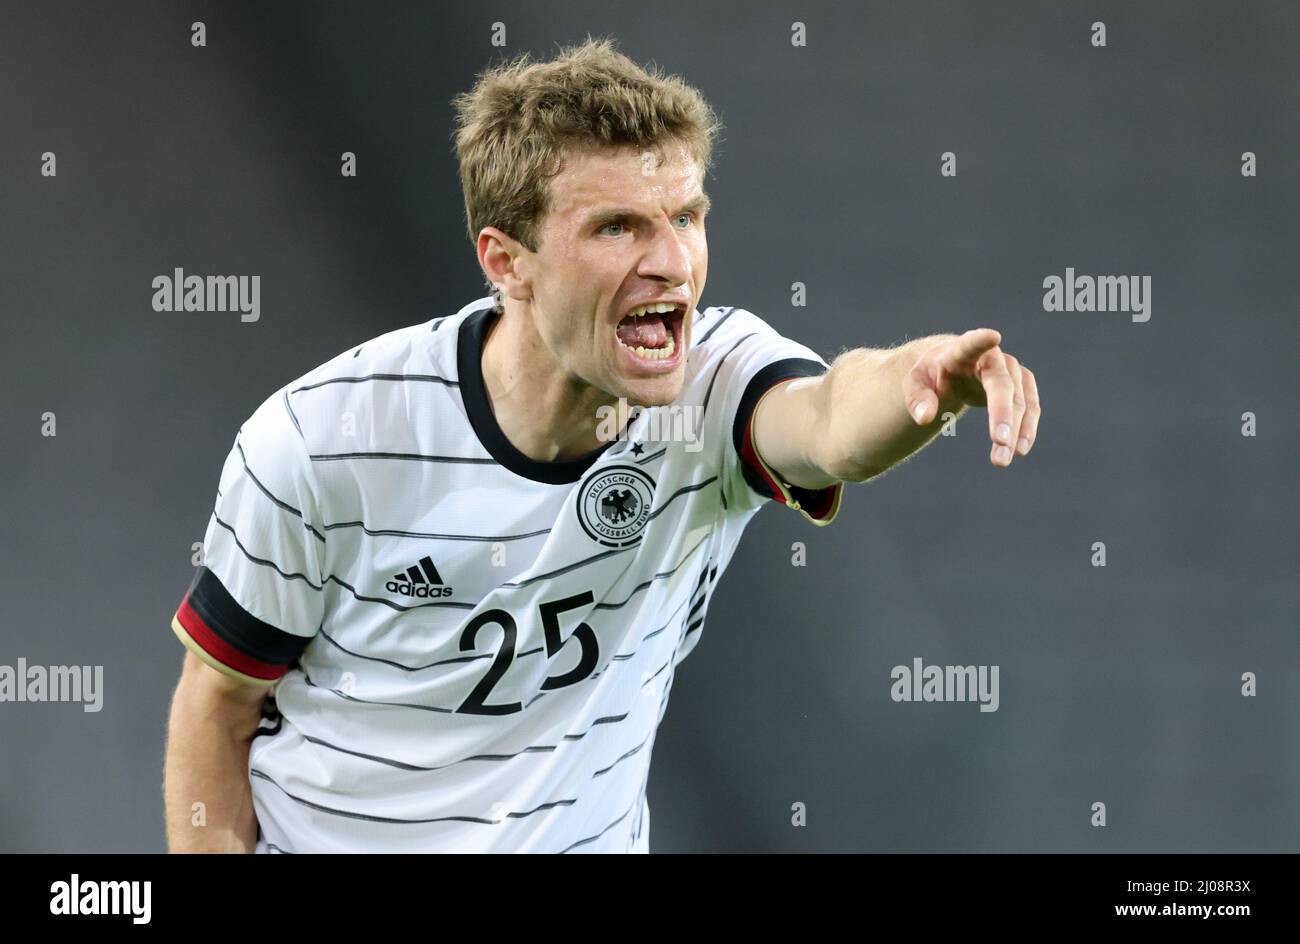 Thomas MŸller Fussball LŠnderspiel Deutschland - DŠnemark © diebilderwelt / Alamy Stock Foto Stock